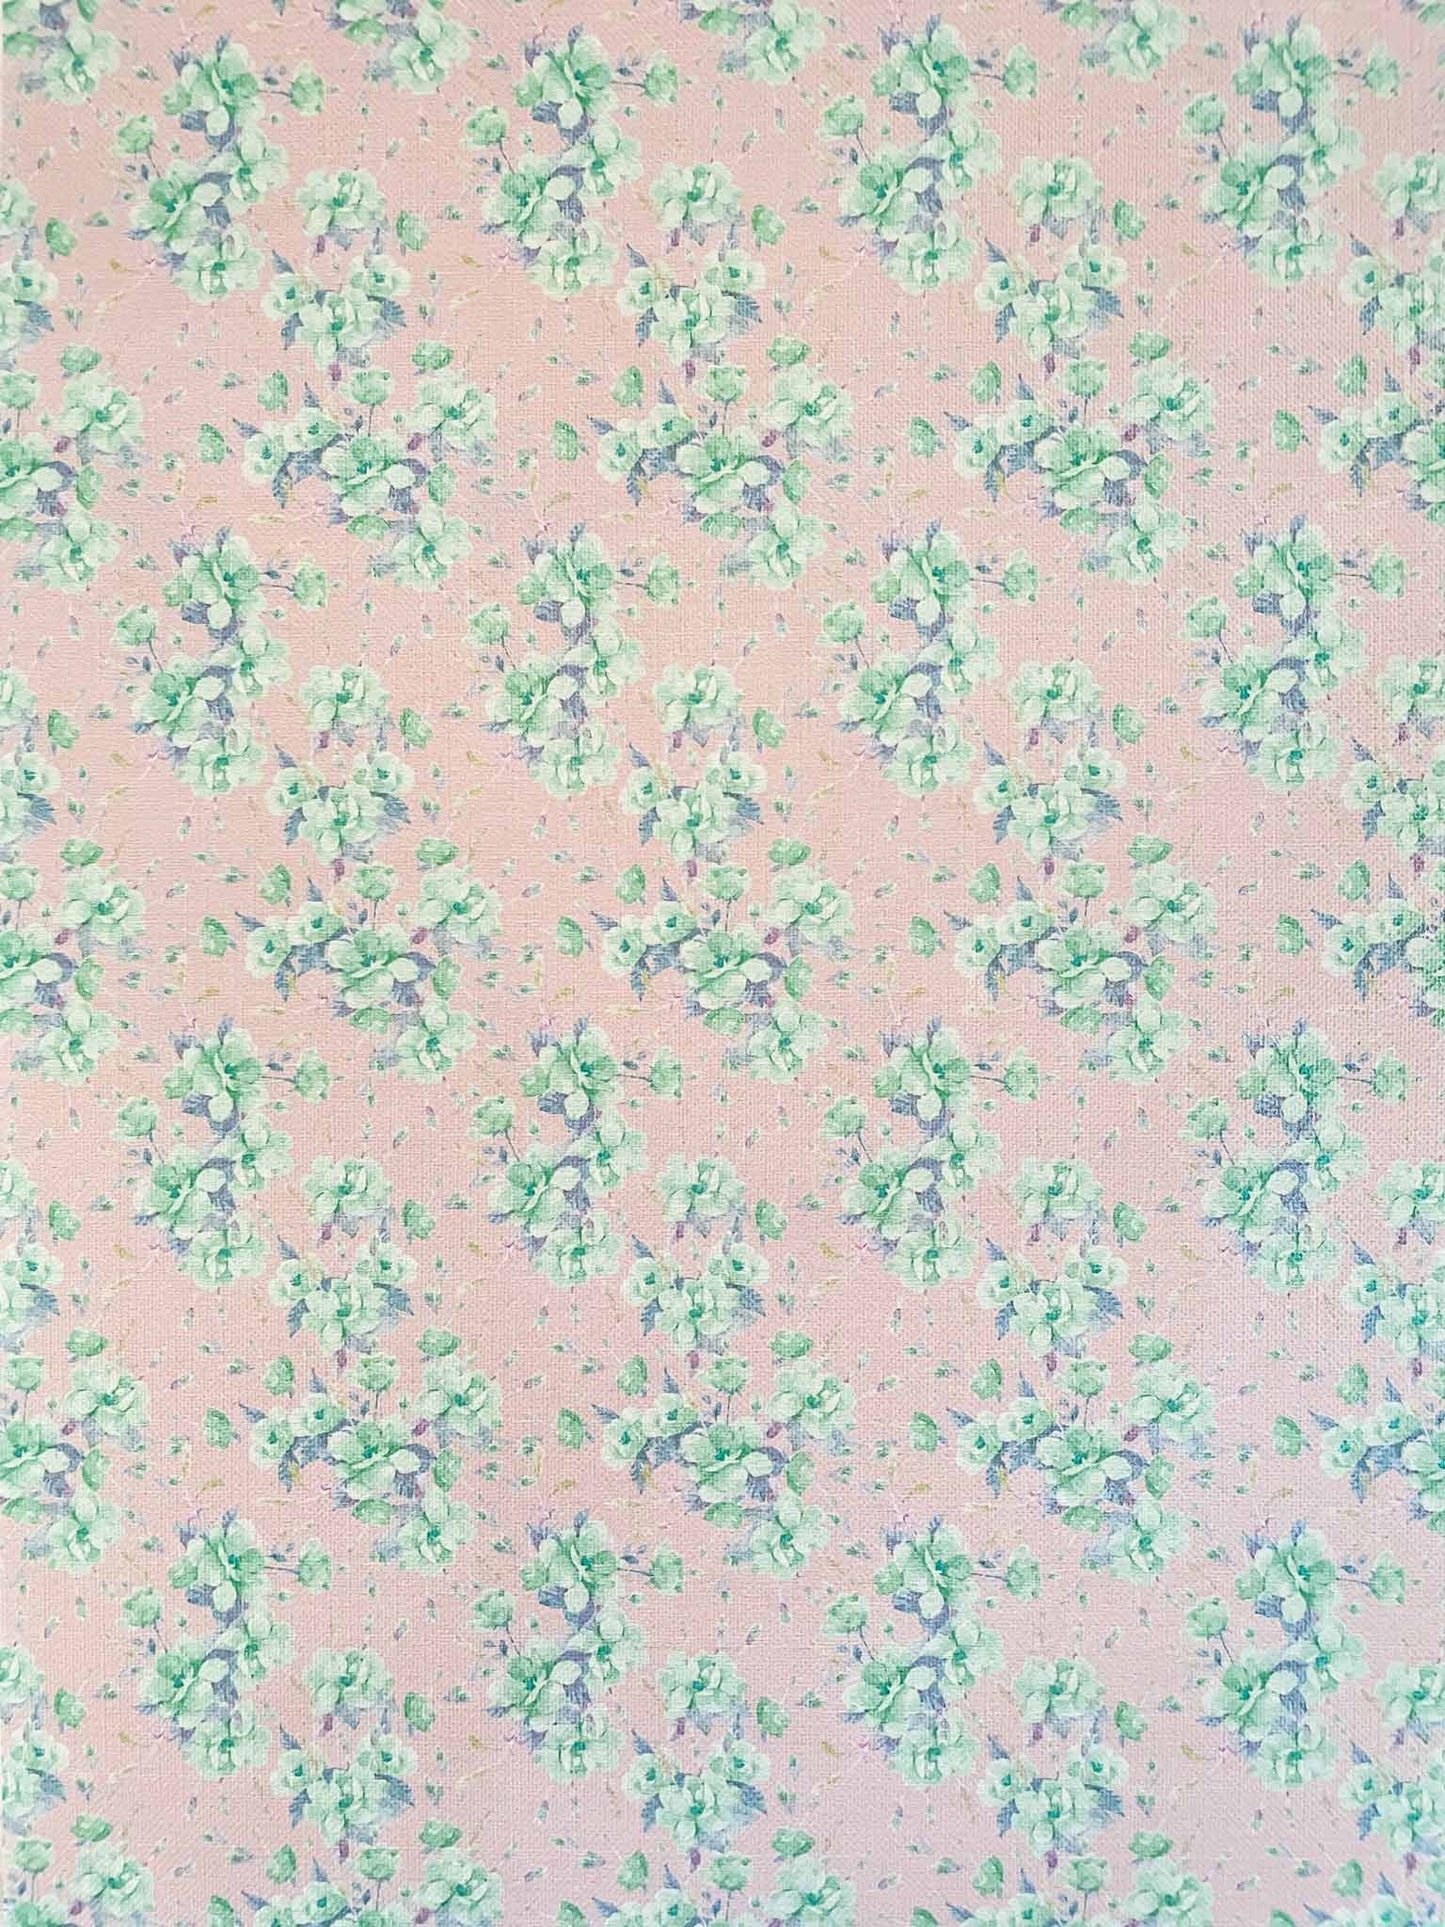 blossom-pink-a4-patterned-paper-vintage